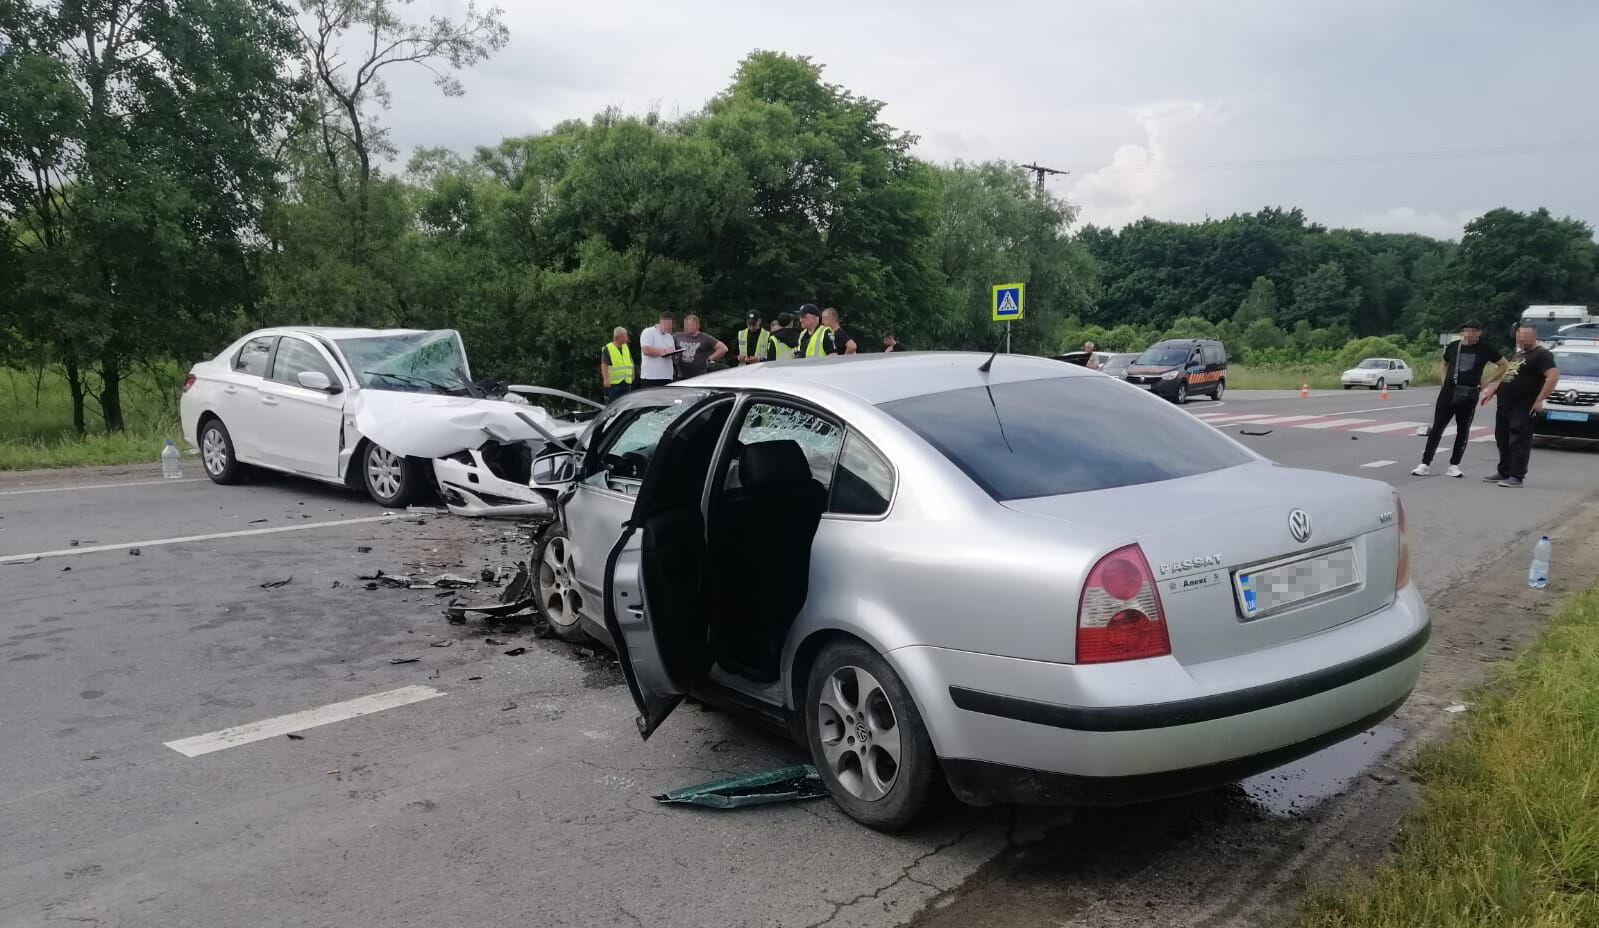 Обломки разлетелись по дороге: во Львовской области в результате ДТП пострадали пять человек. Фото